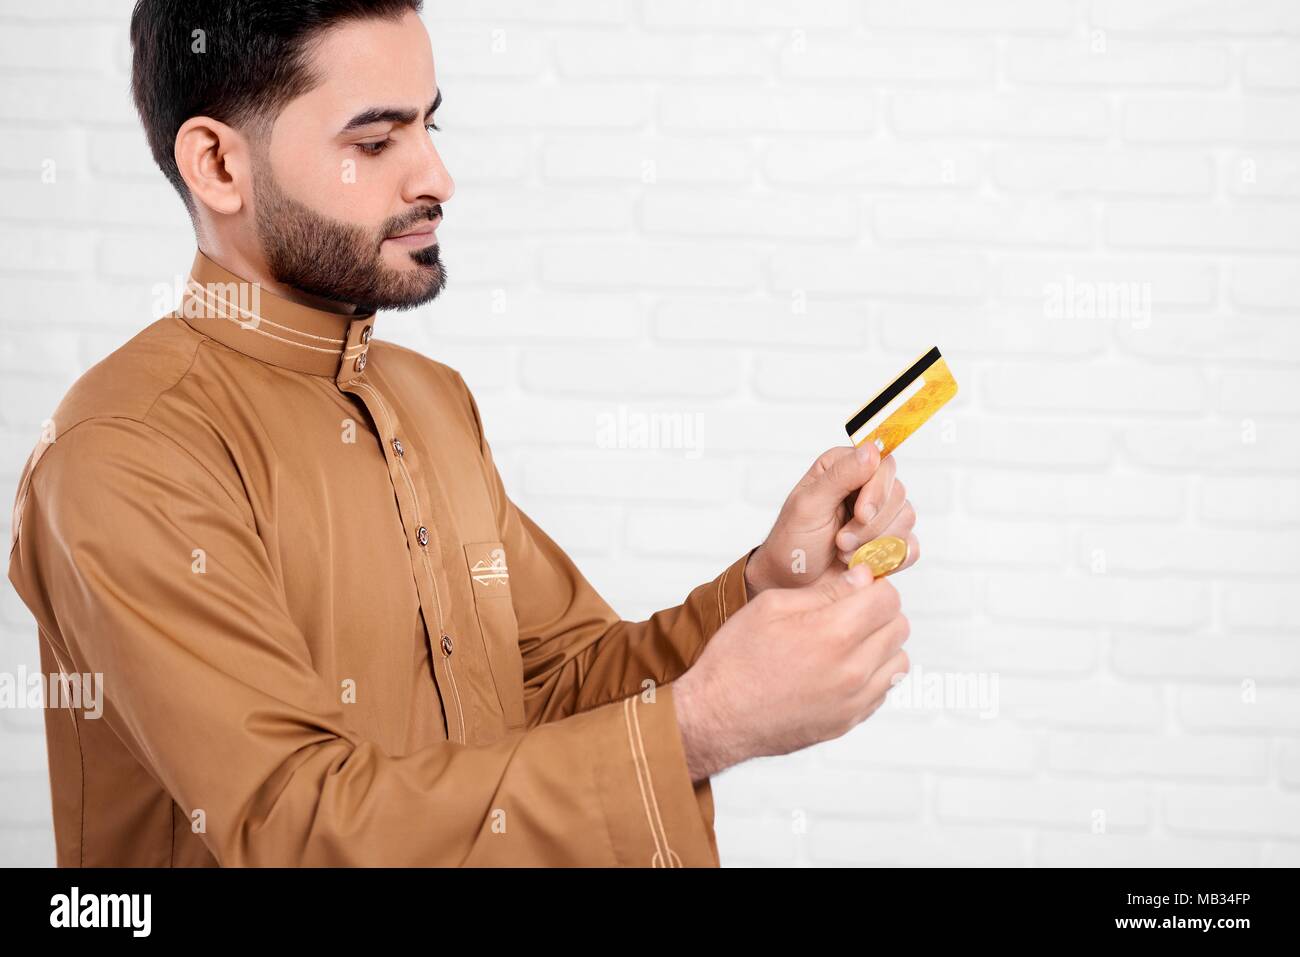 Jeune homme arabe et bitcoin permet de carte de crédit en or sur le fond blanc. Il intéressant d'usure l'usure d'arabie avec un motif précis. Un homme a l'air très occupé, il doit prendre une décision importante. Banque D'Images